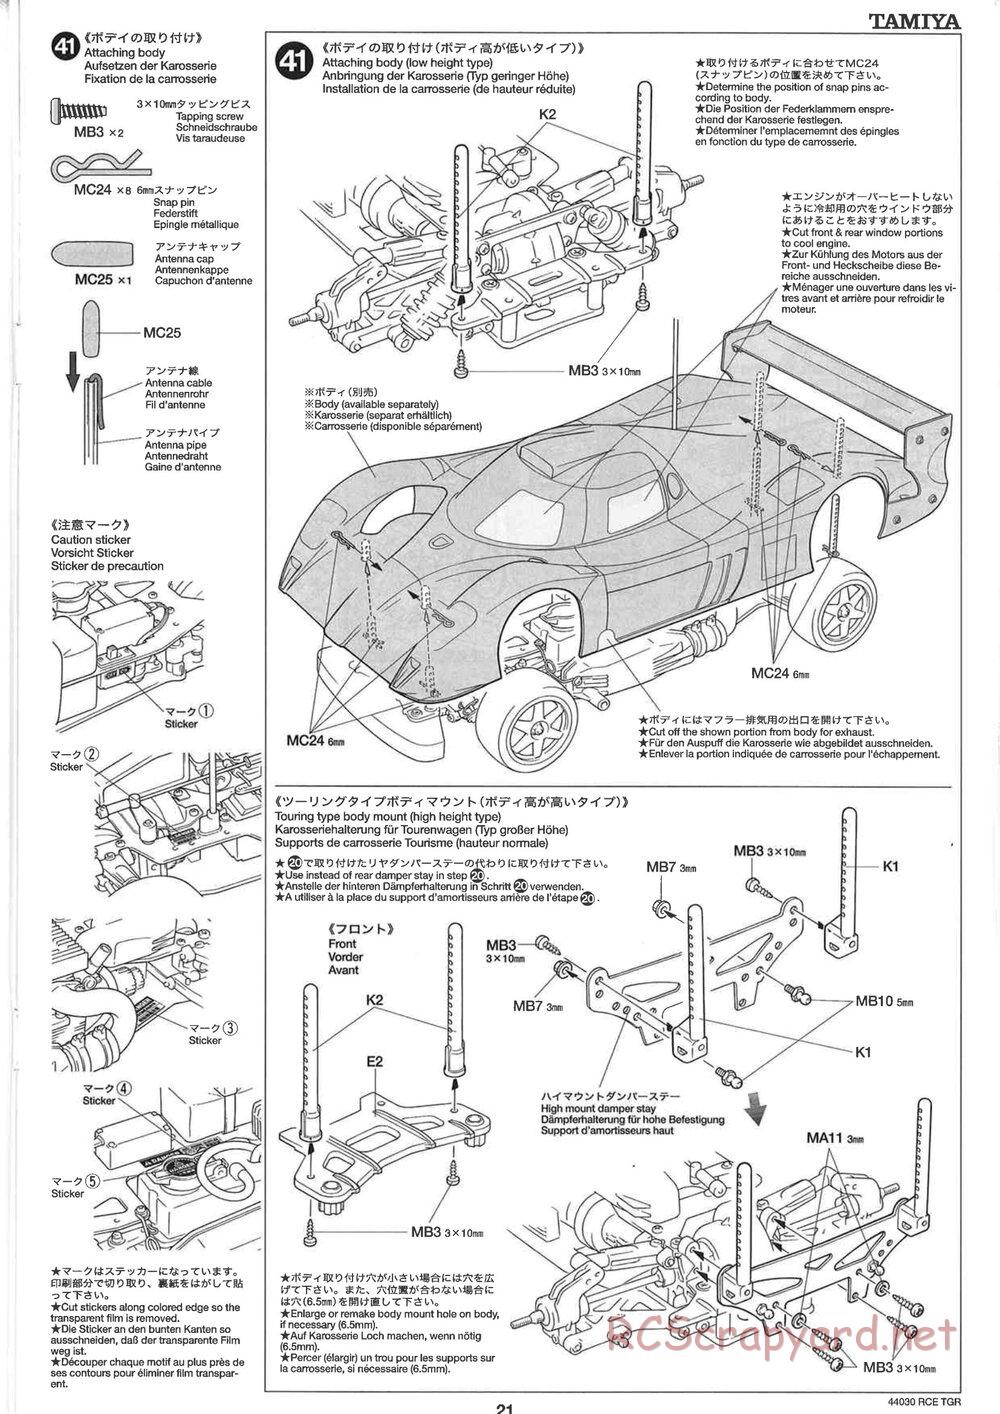 Tamiya - TGR Chassis - Manual - Page 21